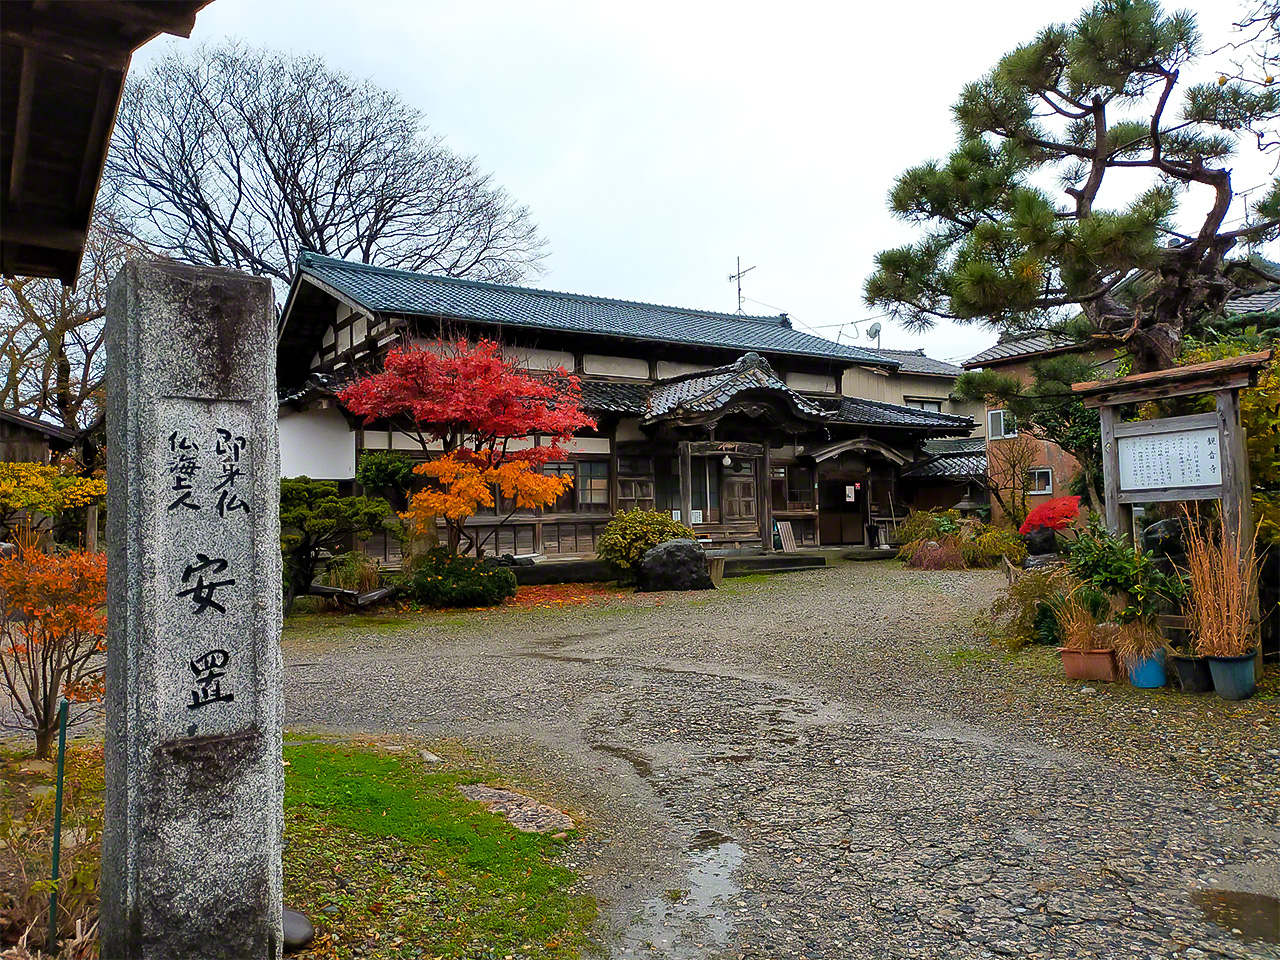 The main hall at Kannonji.